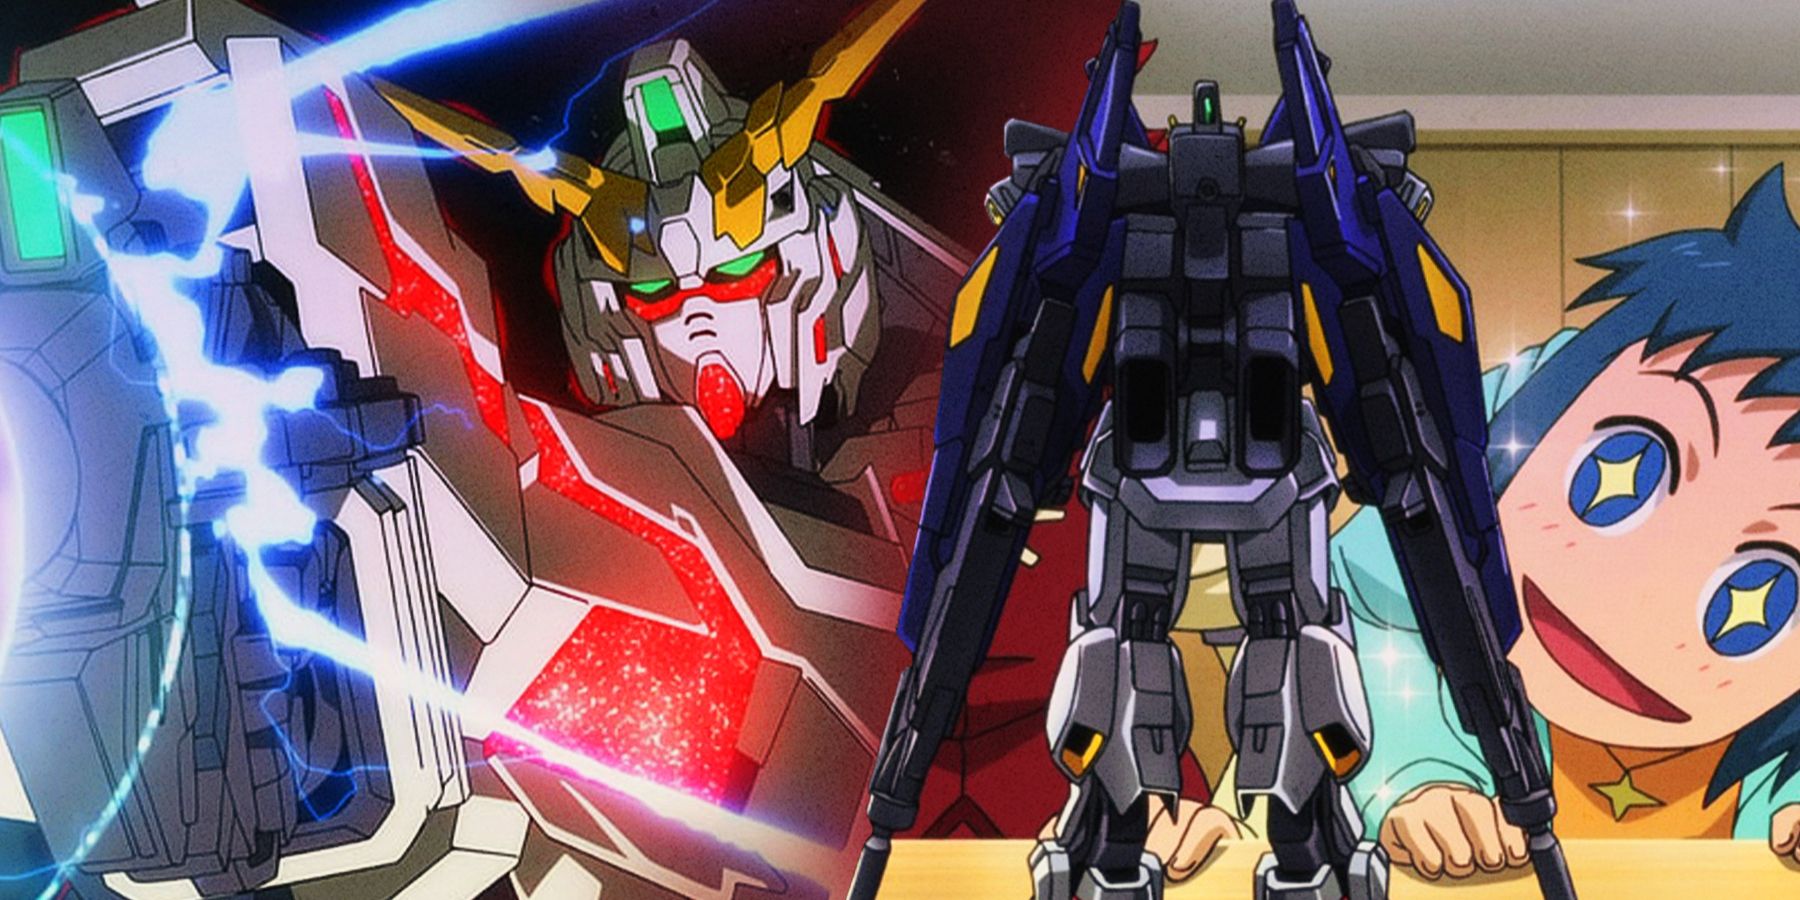 Gundam Unicorn and Gundam Guild Fighters